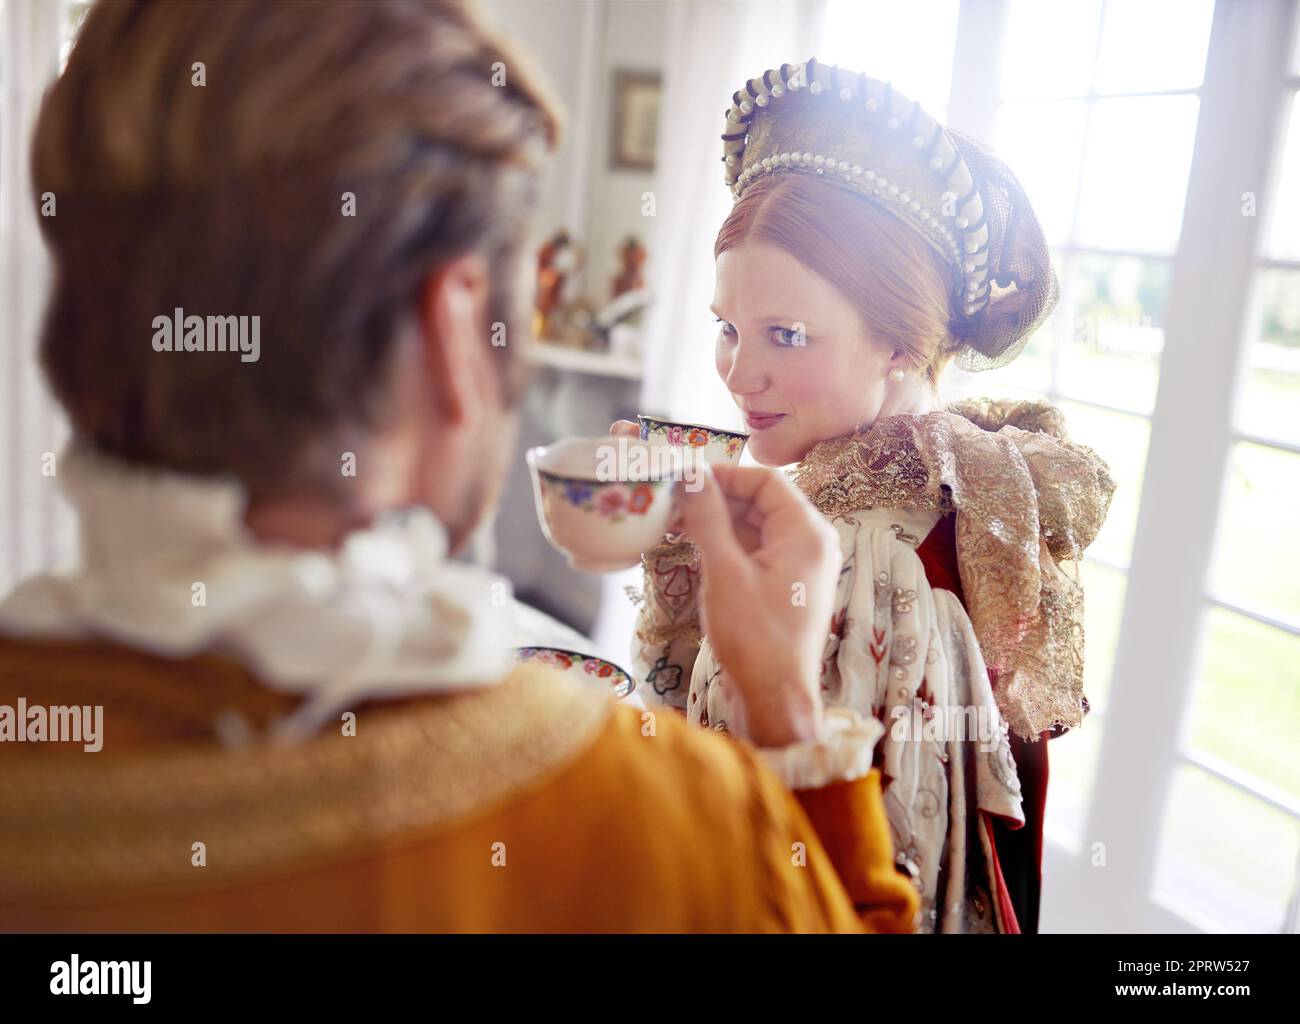 Semplicemente meraviglioso tea mlord. Un re e una regina che prendono il tè insieme a casa. Foto Stock